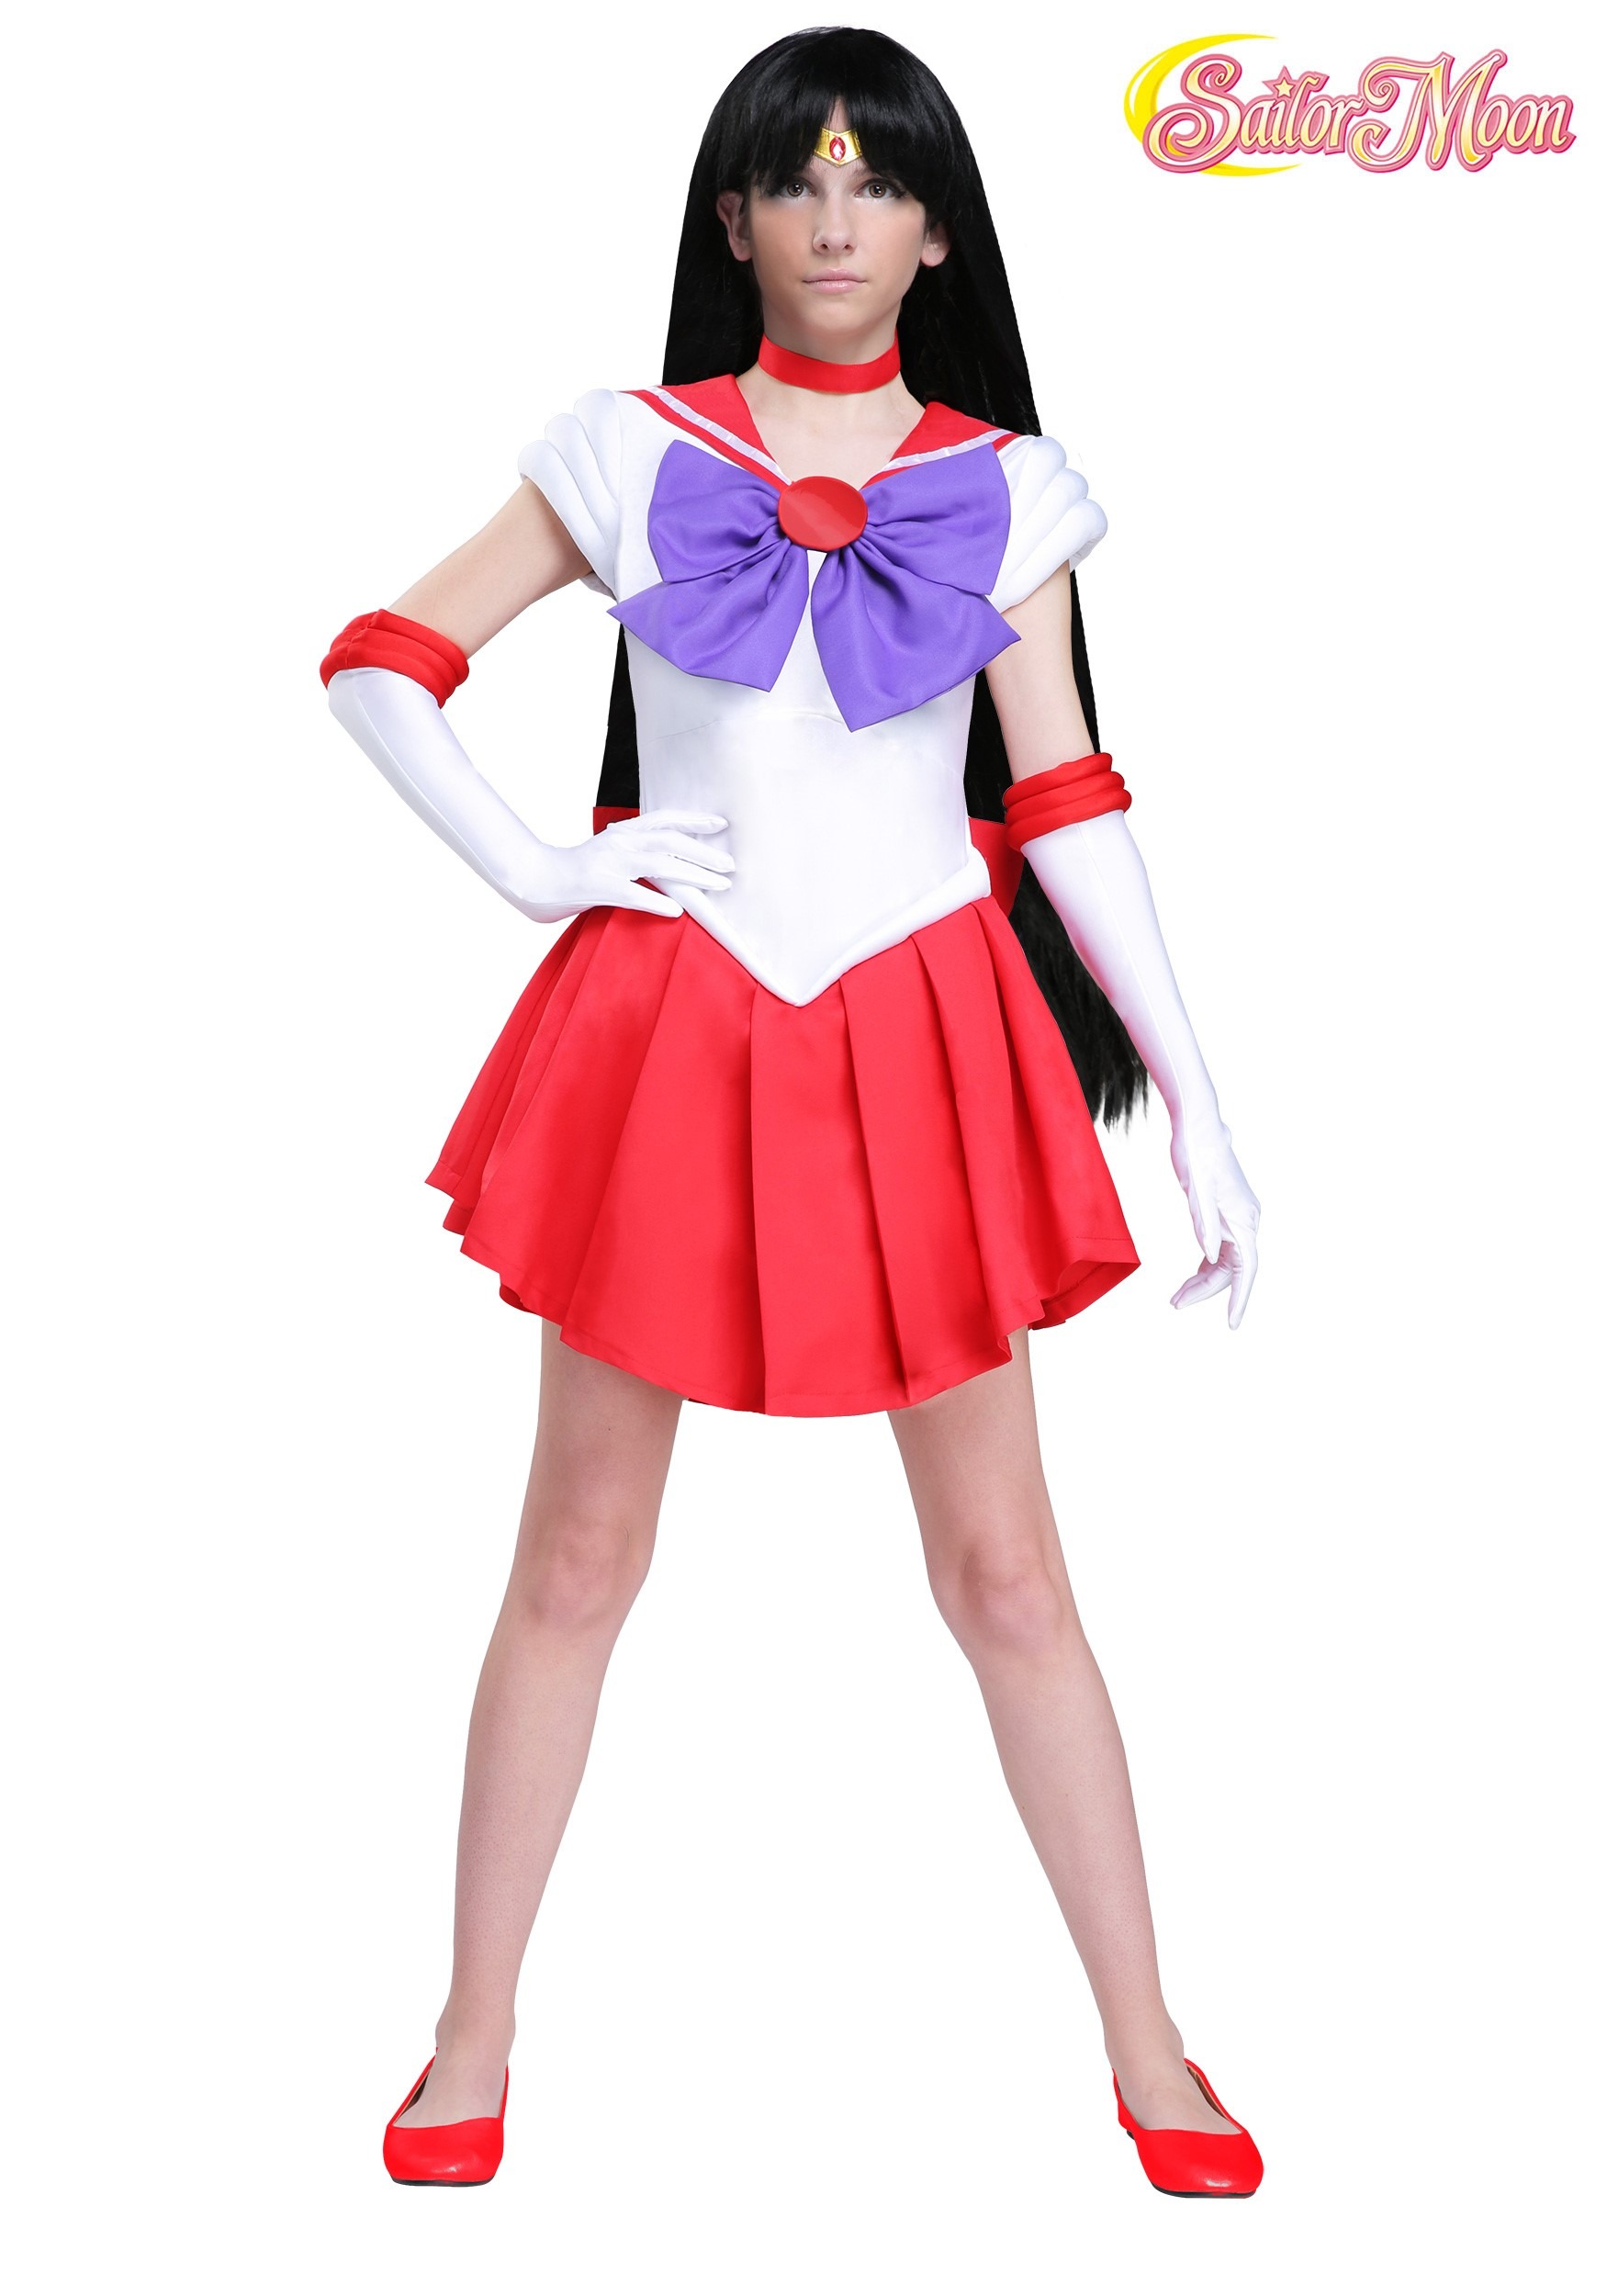 Sailor Moon: Sailor Mars Women’s Costume